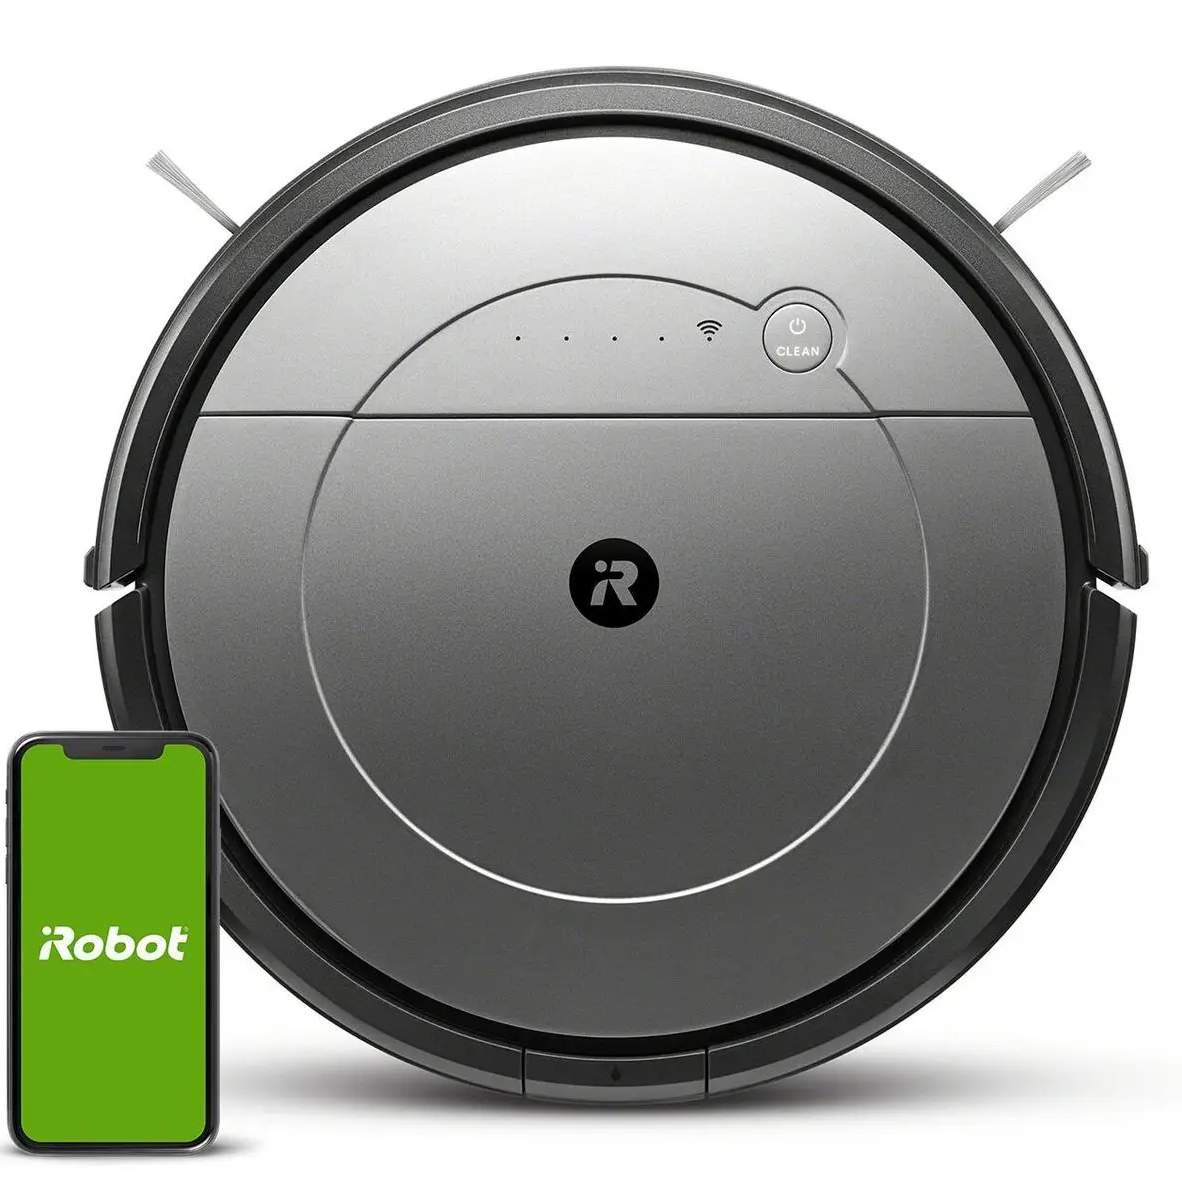 Робот-пилосос iRobot Roomba Combo